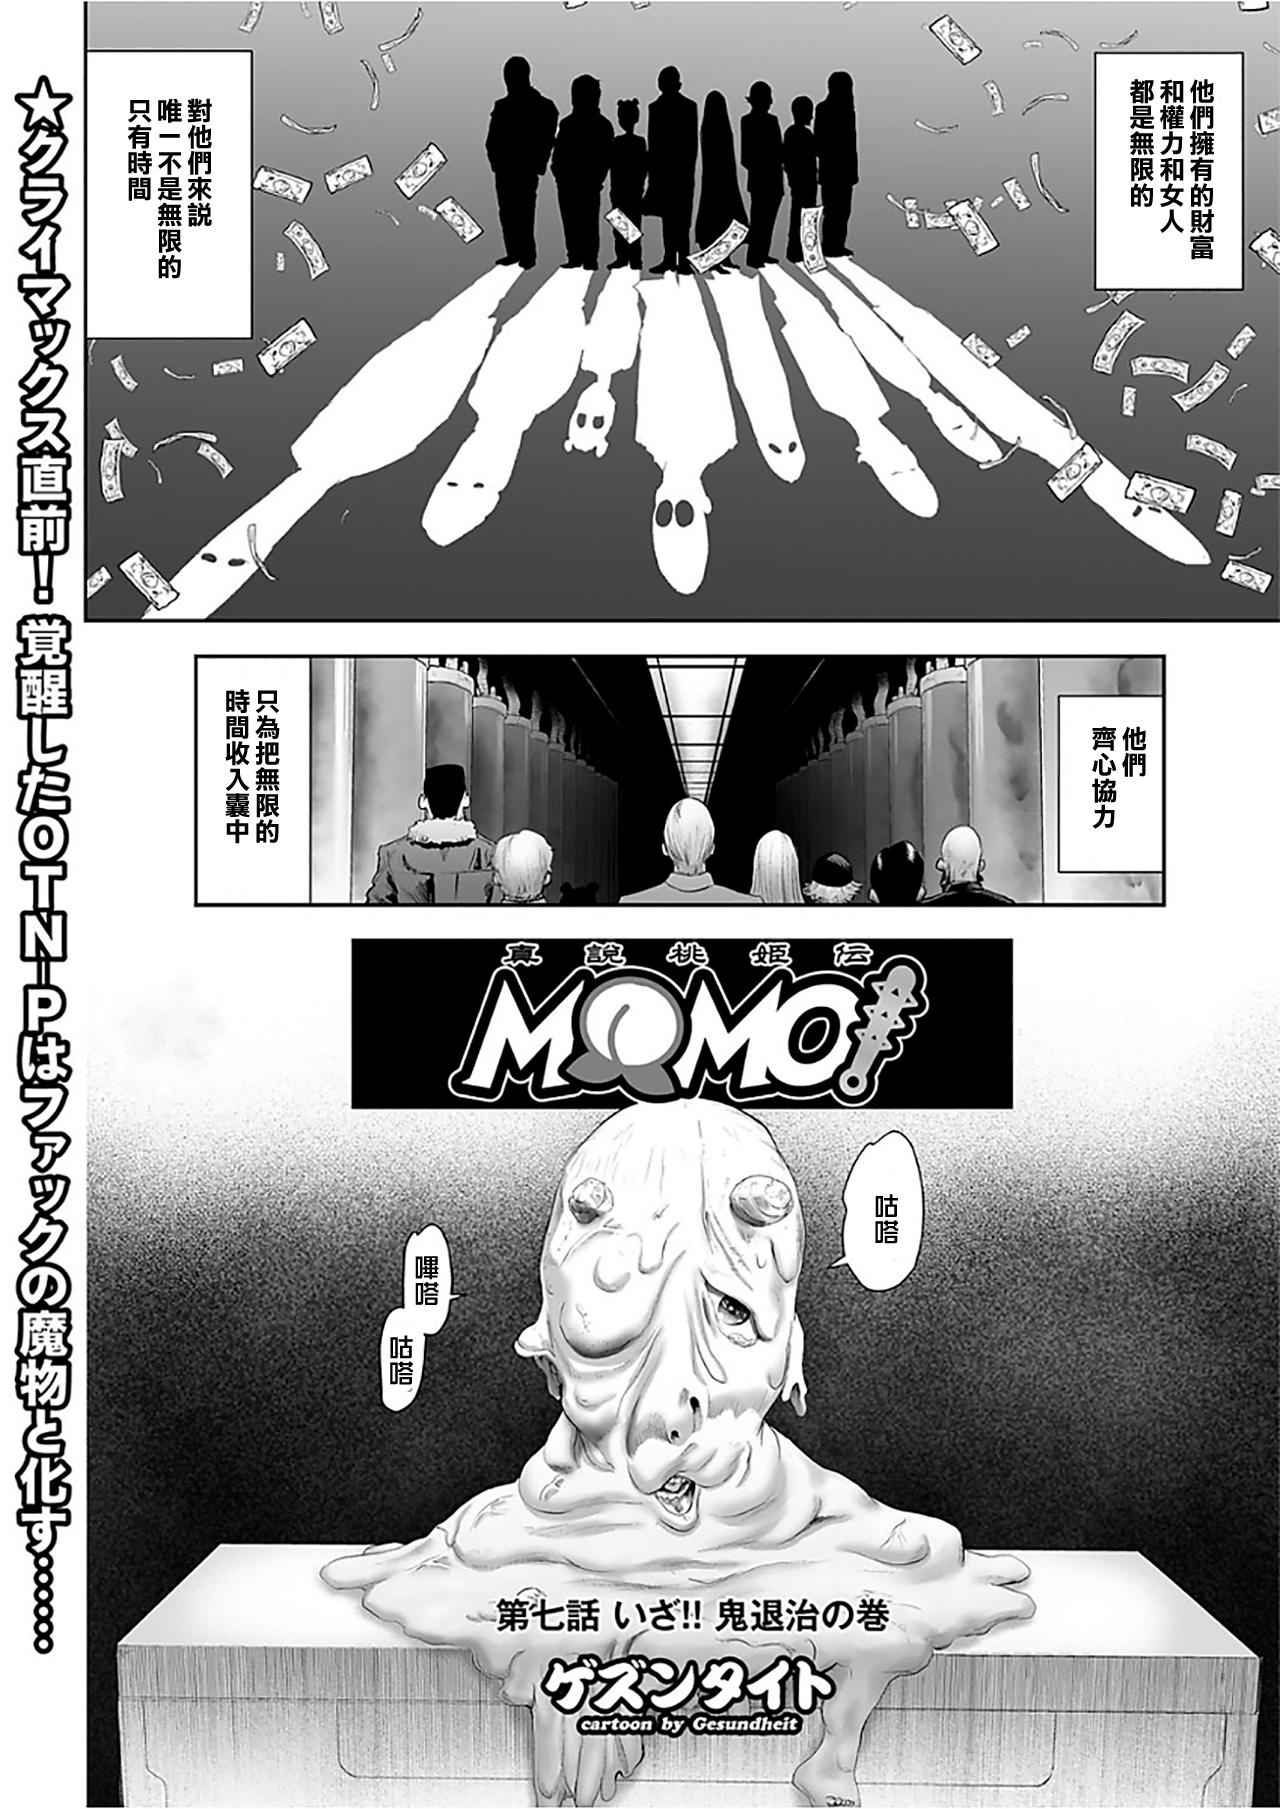 MOMO! Dainanawa Onitaiji No Ken 1